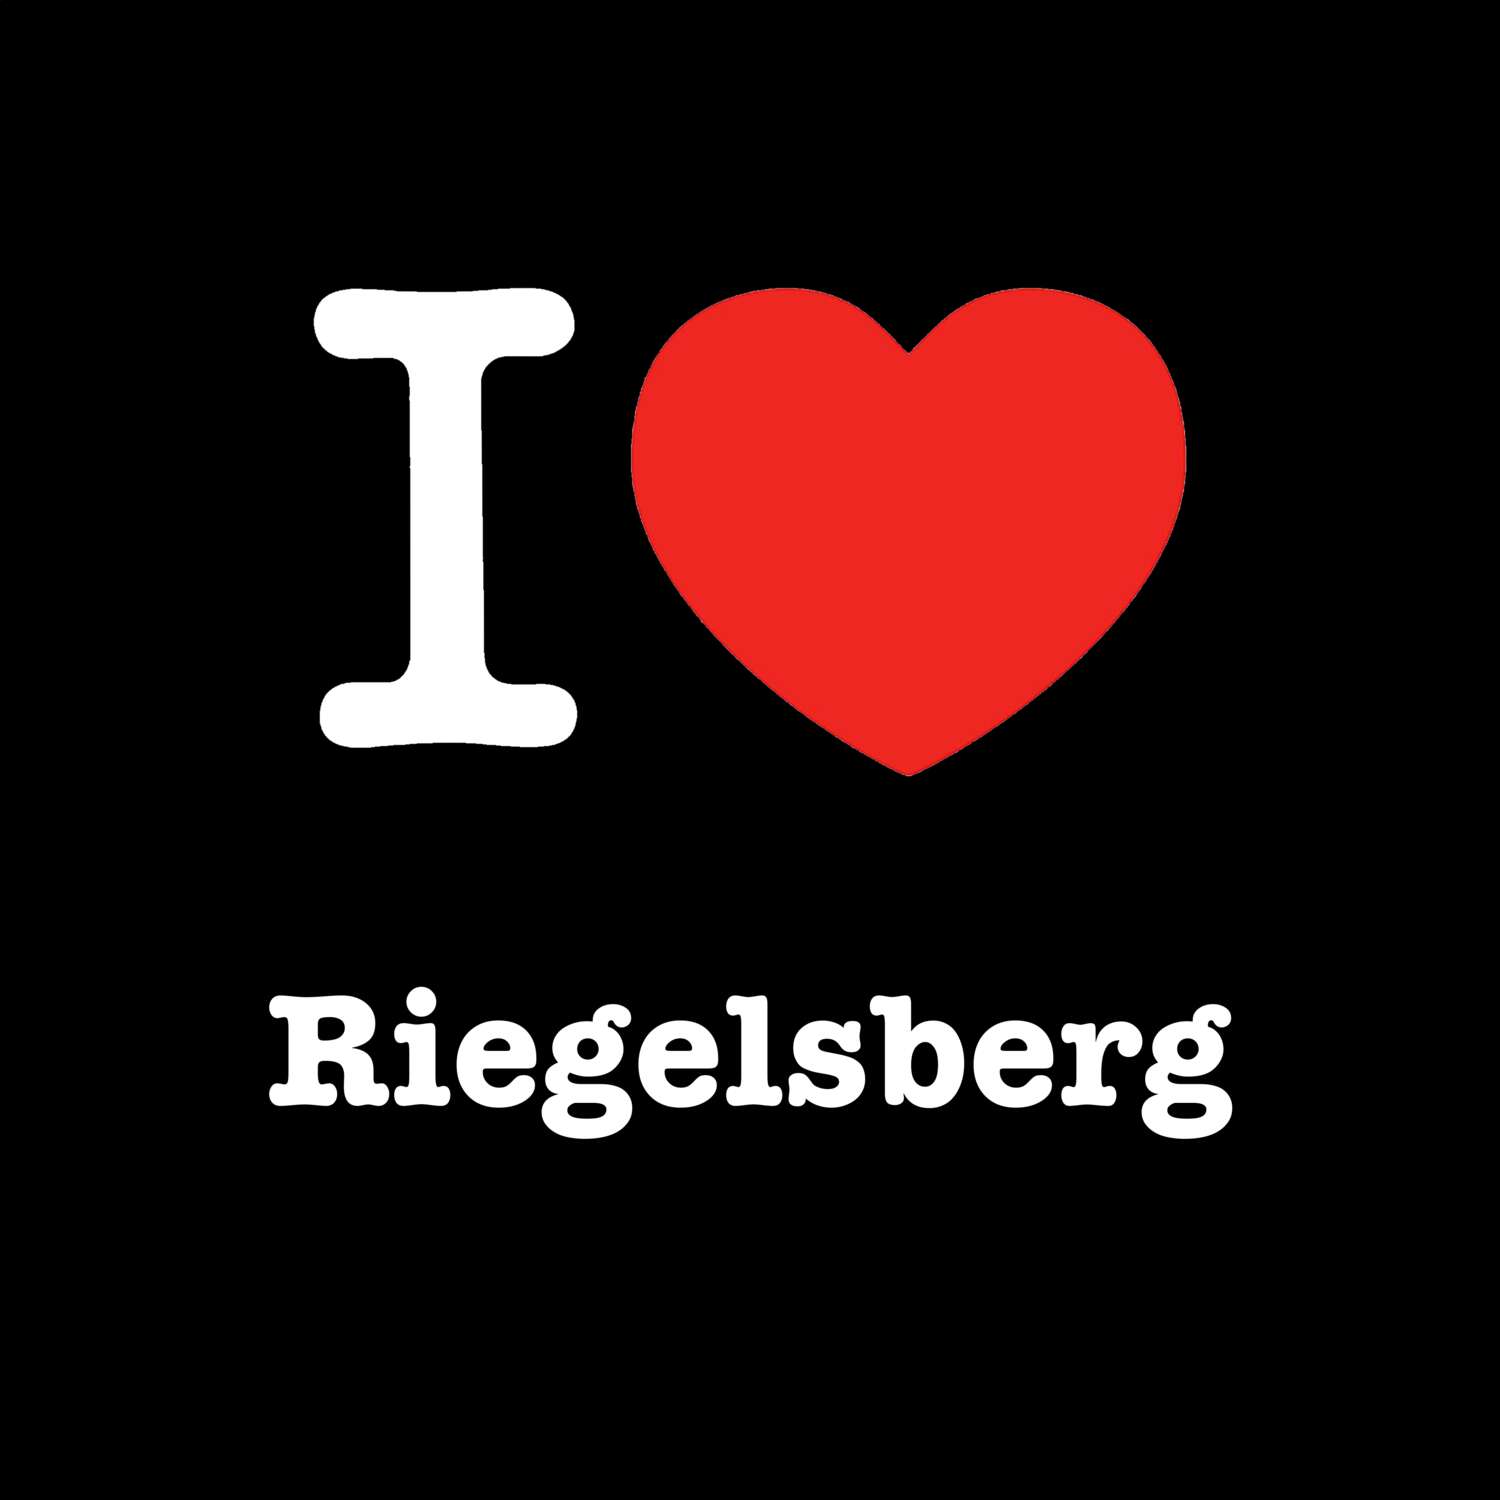 Riegelsberg T-Shirt »I love«